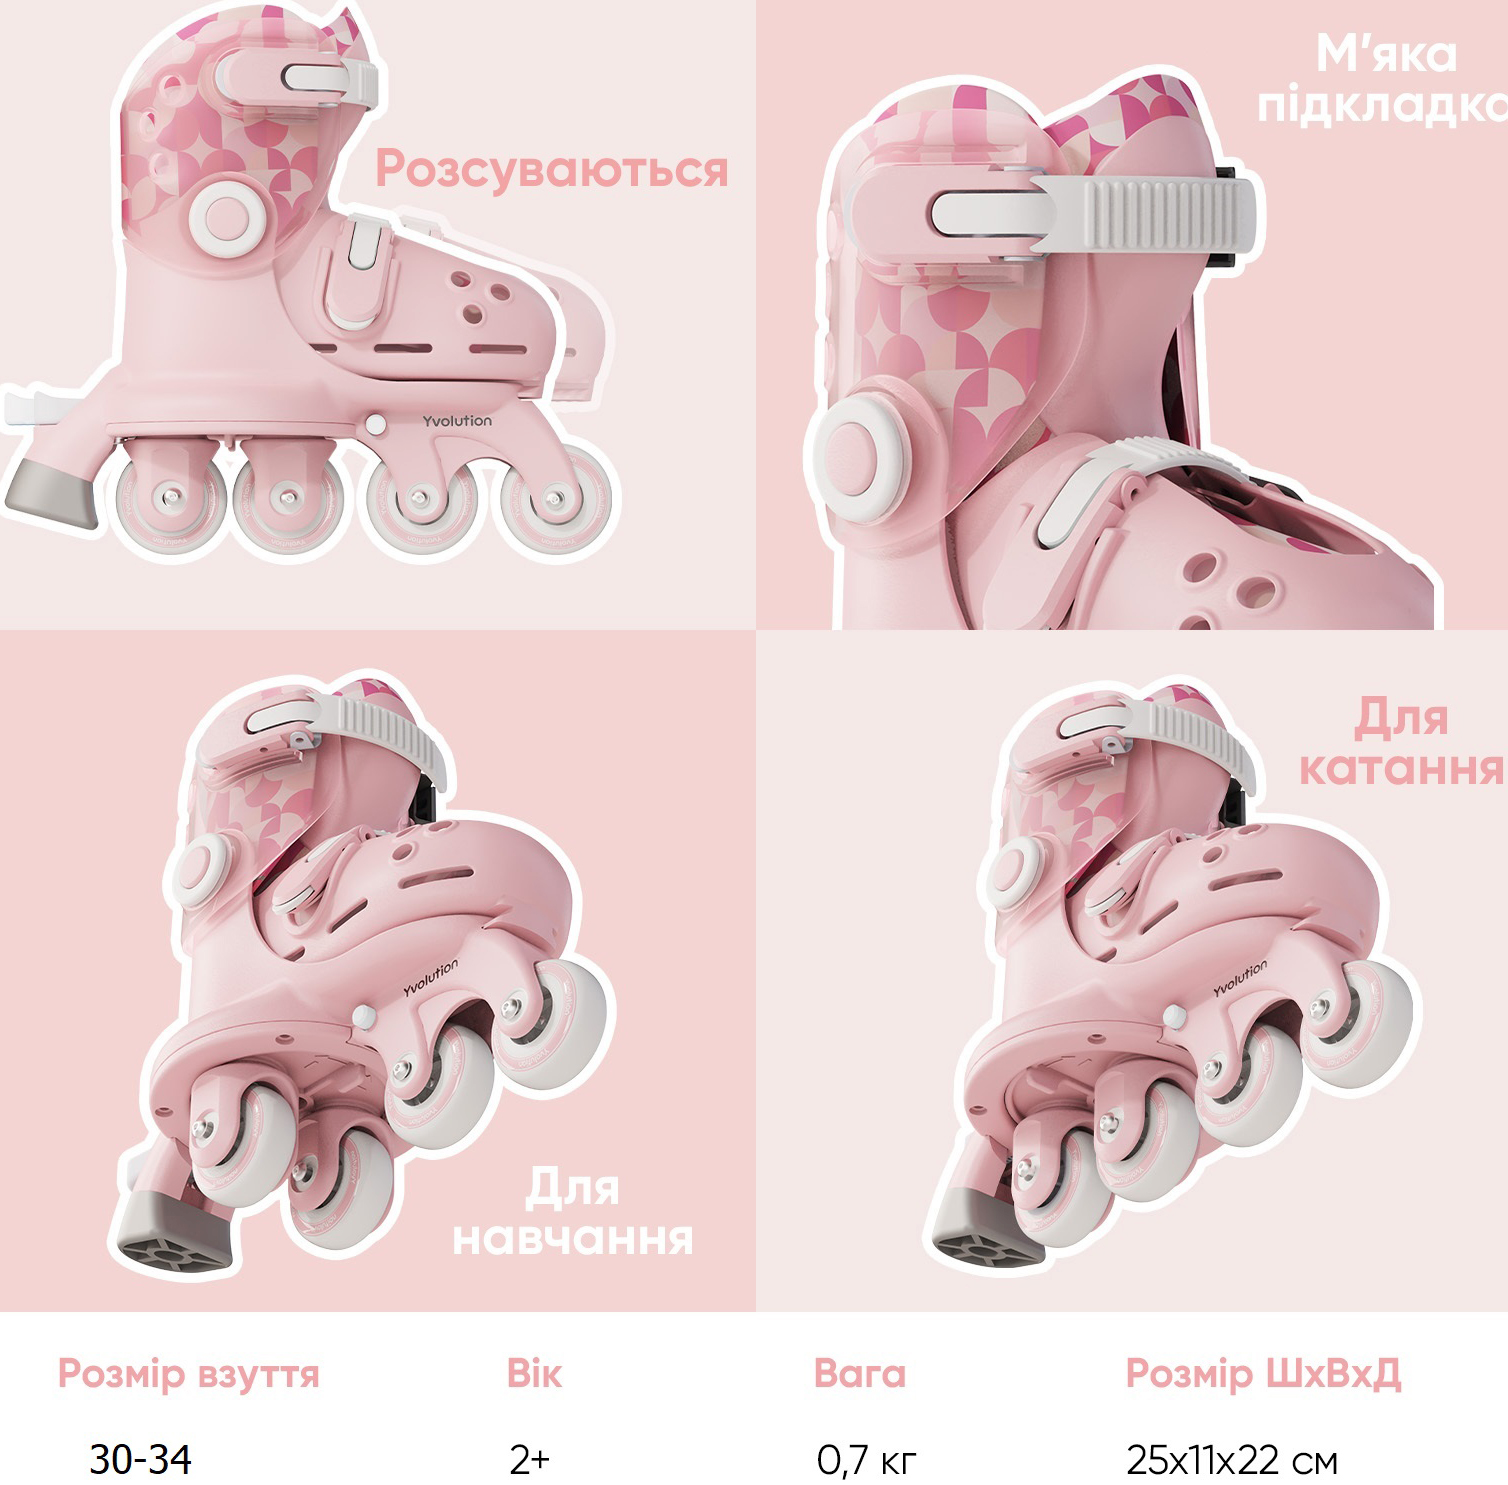 Роликовые коньки Yvolution Twista, размер 30-34, розовый фото 12